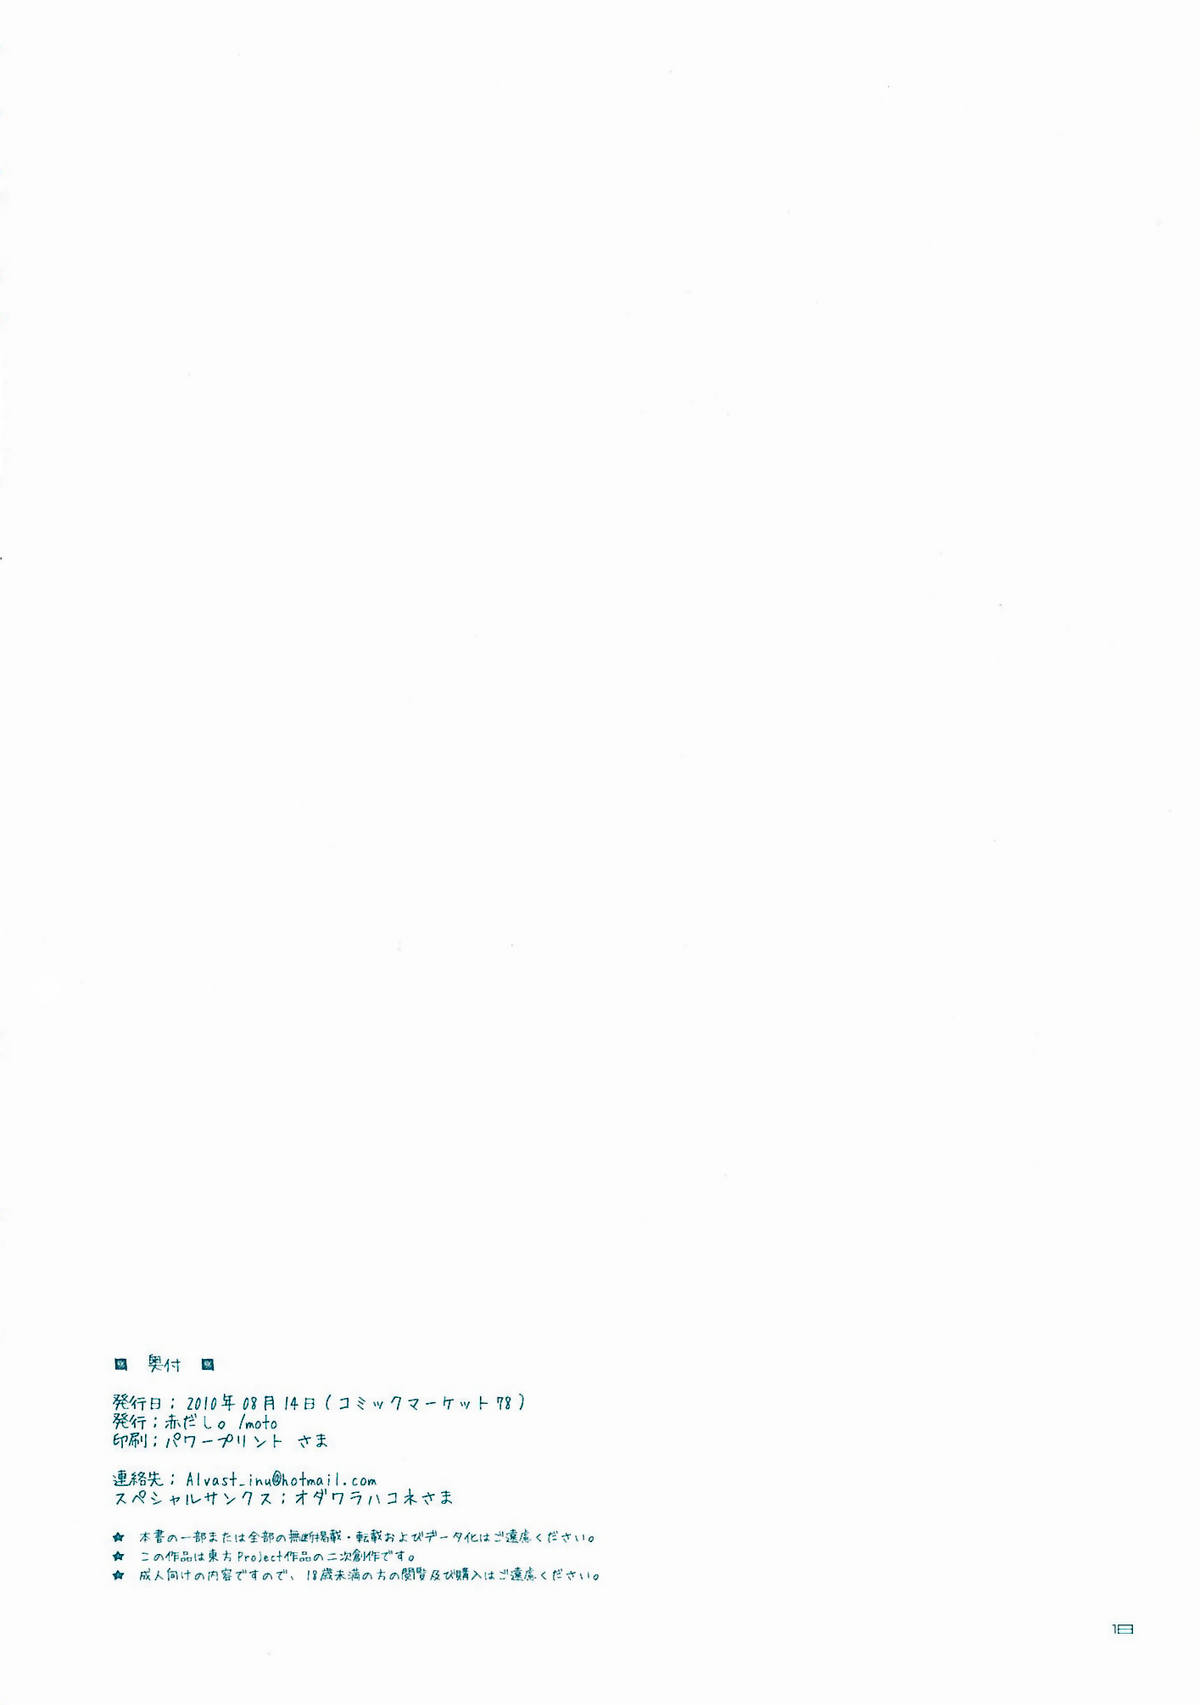 (C78) [赤だし。 (moto)] EI-KOMA FOR ANSWER (東方Project)